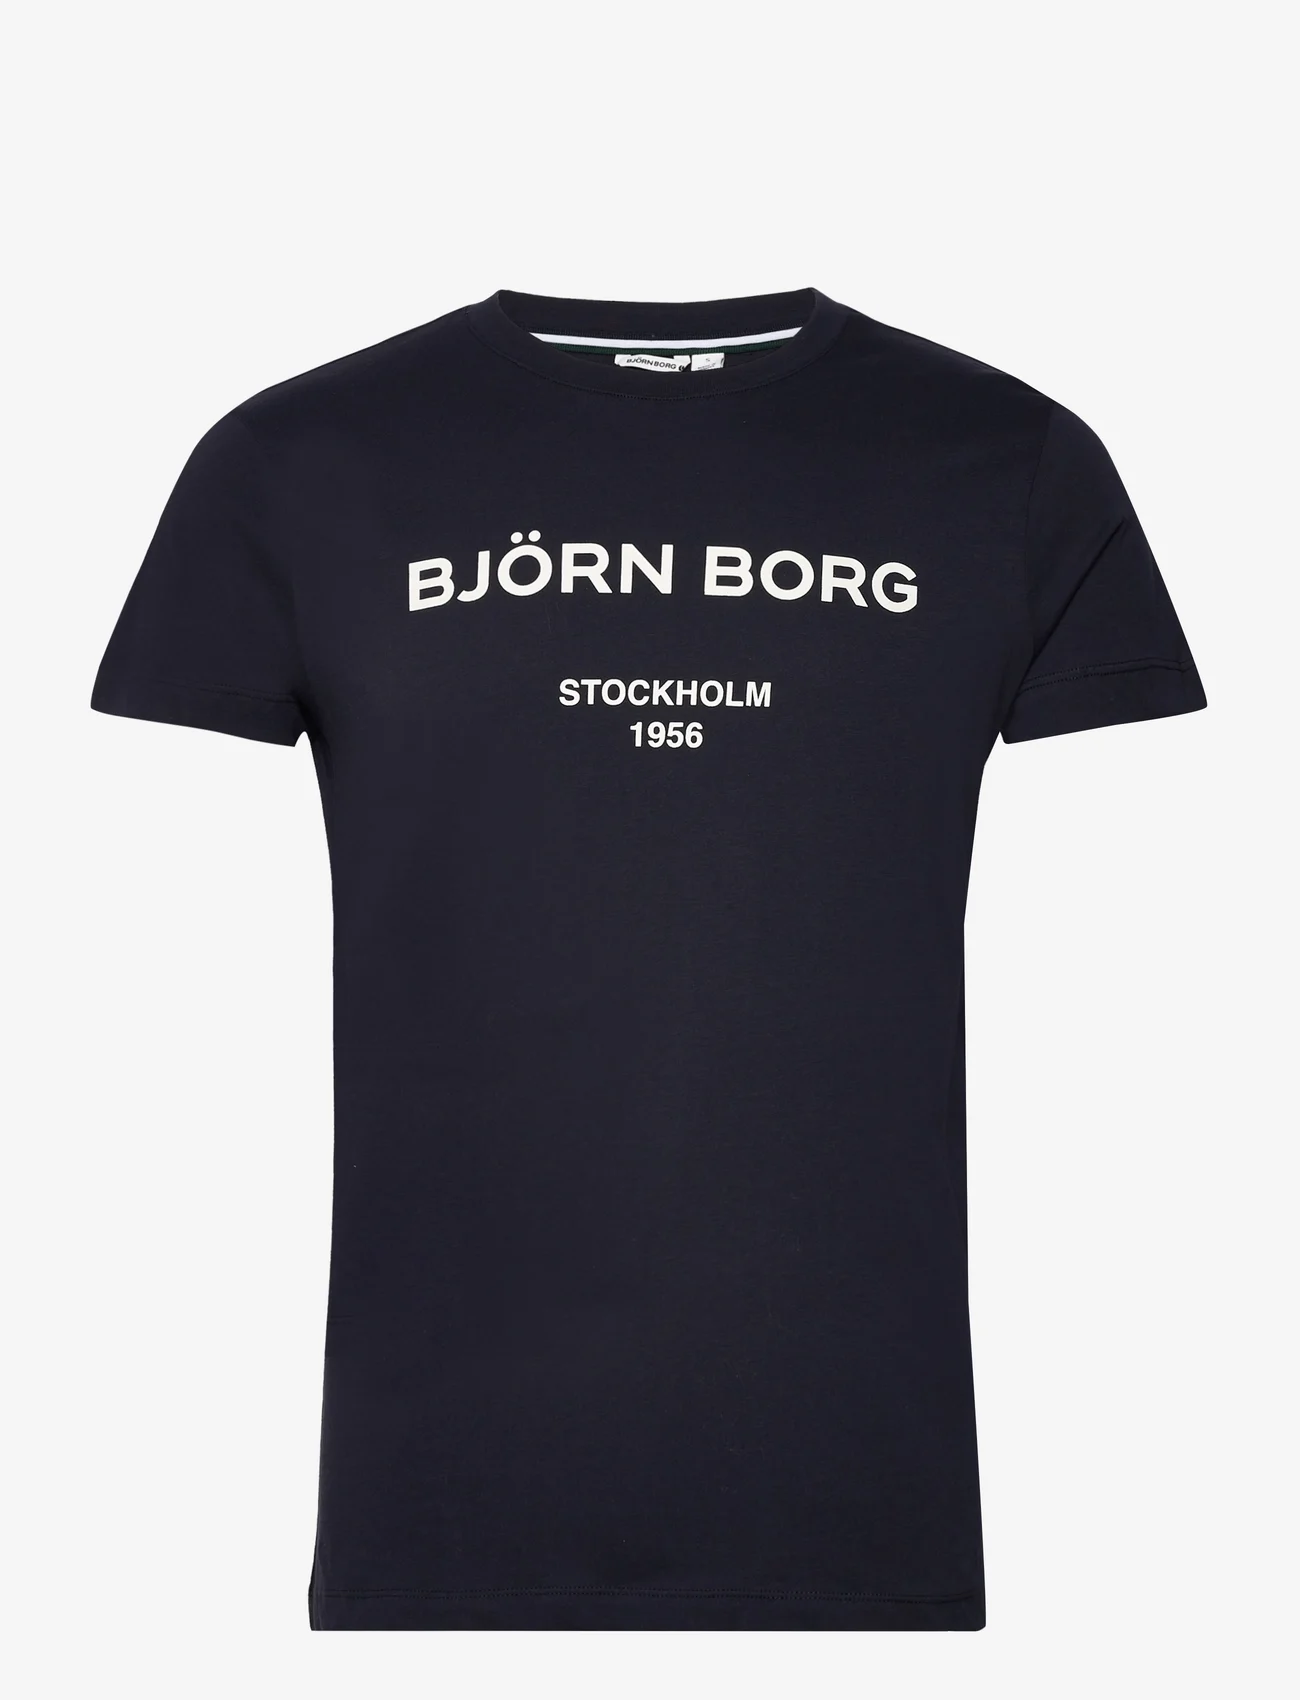 Björn Borg - BORG LOGO T-SHIRT - lägsta priserna - night sky - 0